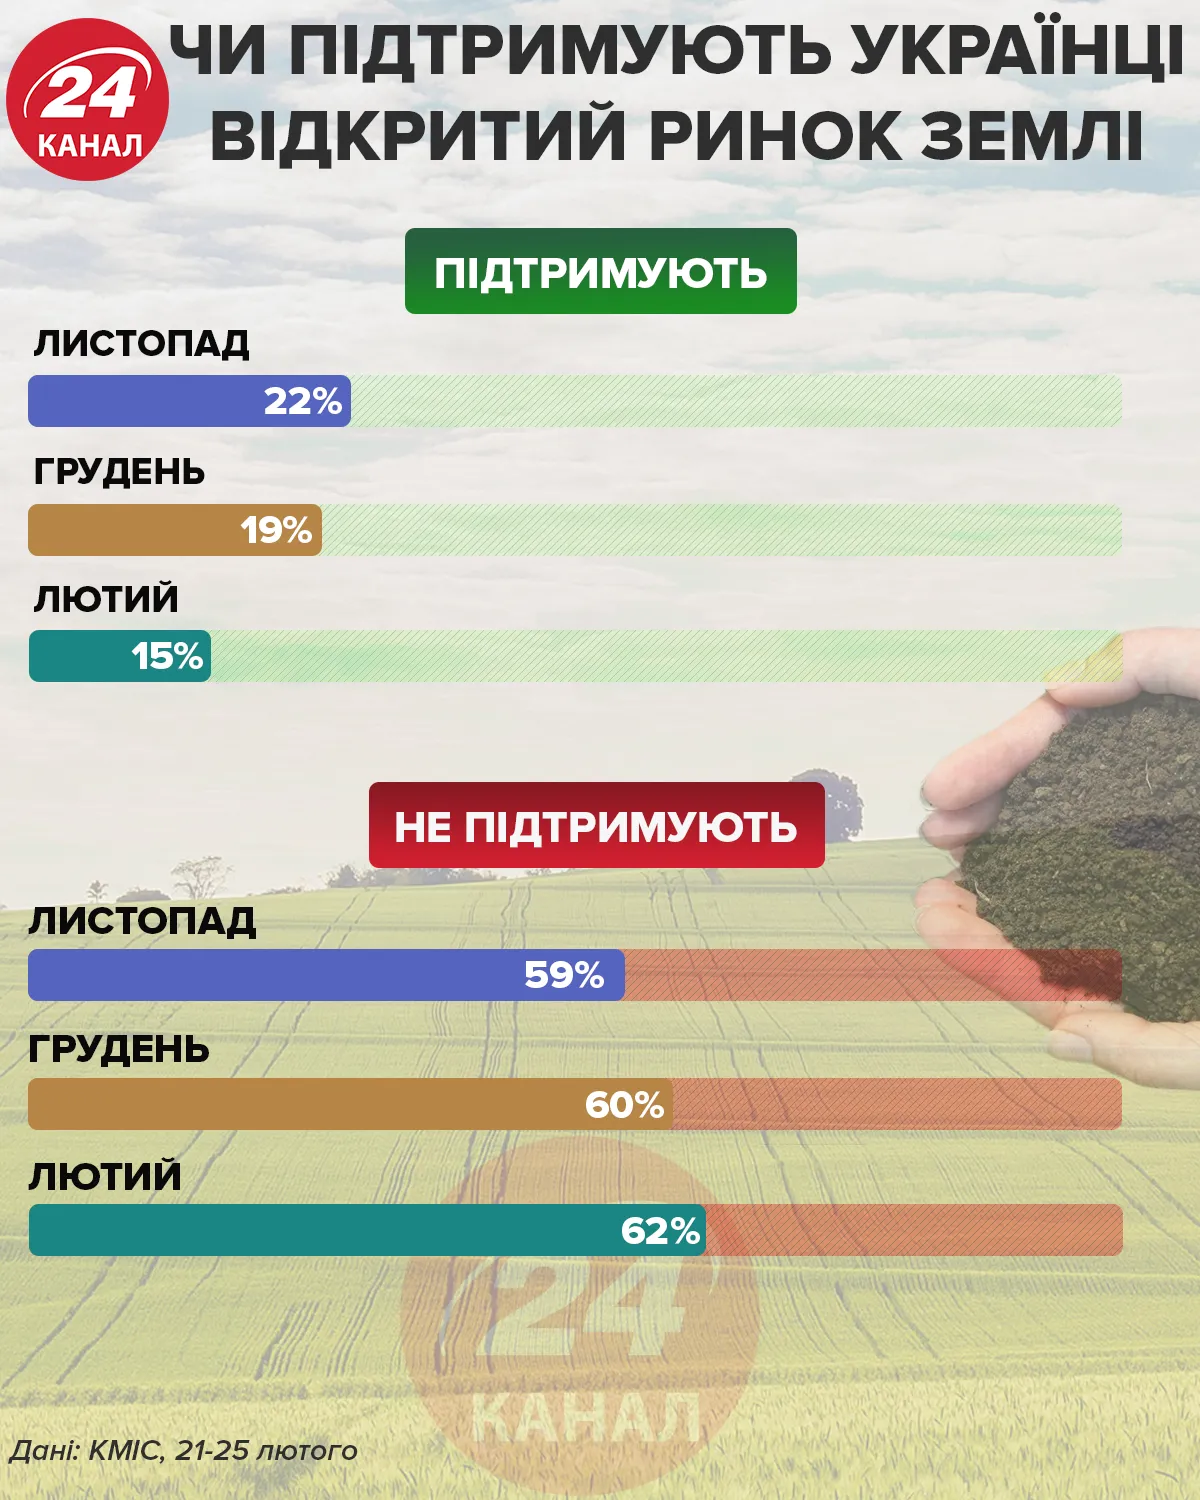 Поддерживают ли украинцы рынок земли Инфографика 24 канала